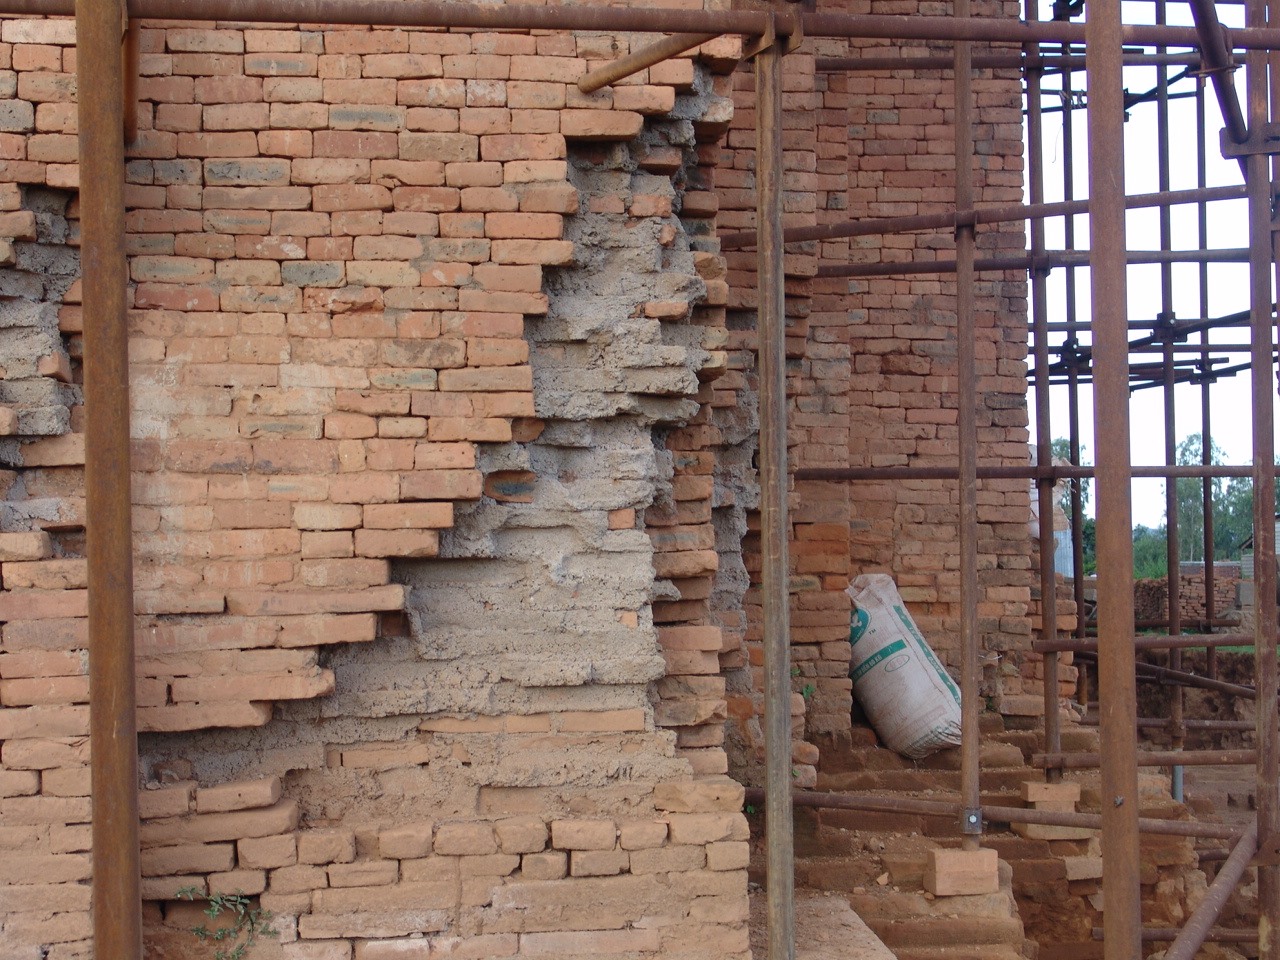 Gạch vồ, xi măng được sử dụng trùng tu tại một tháp Chăm ở Bình Định. Ảnh NTH